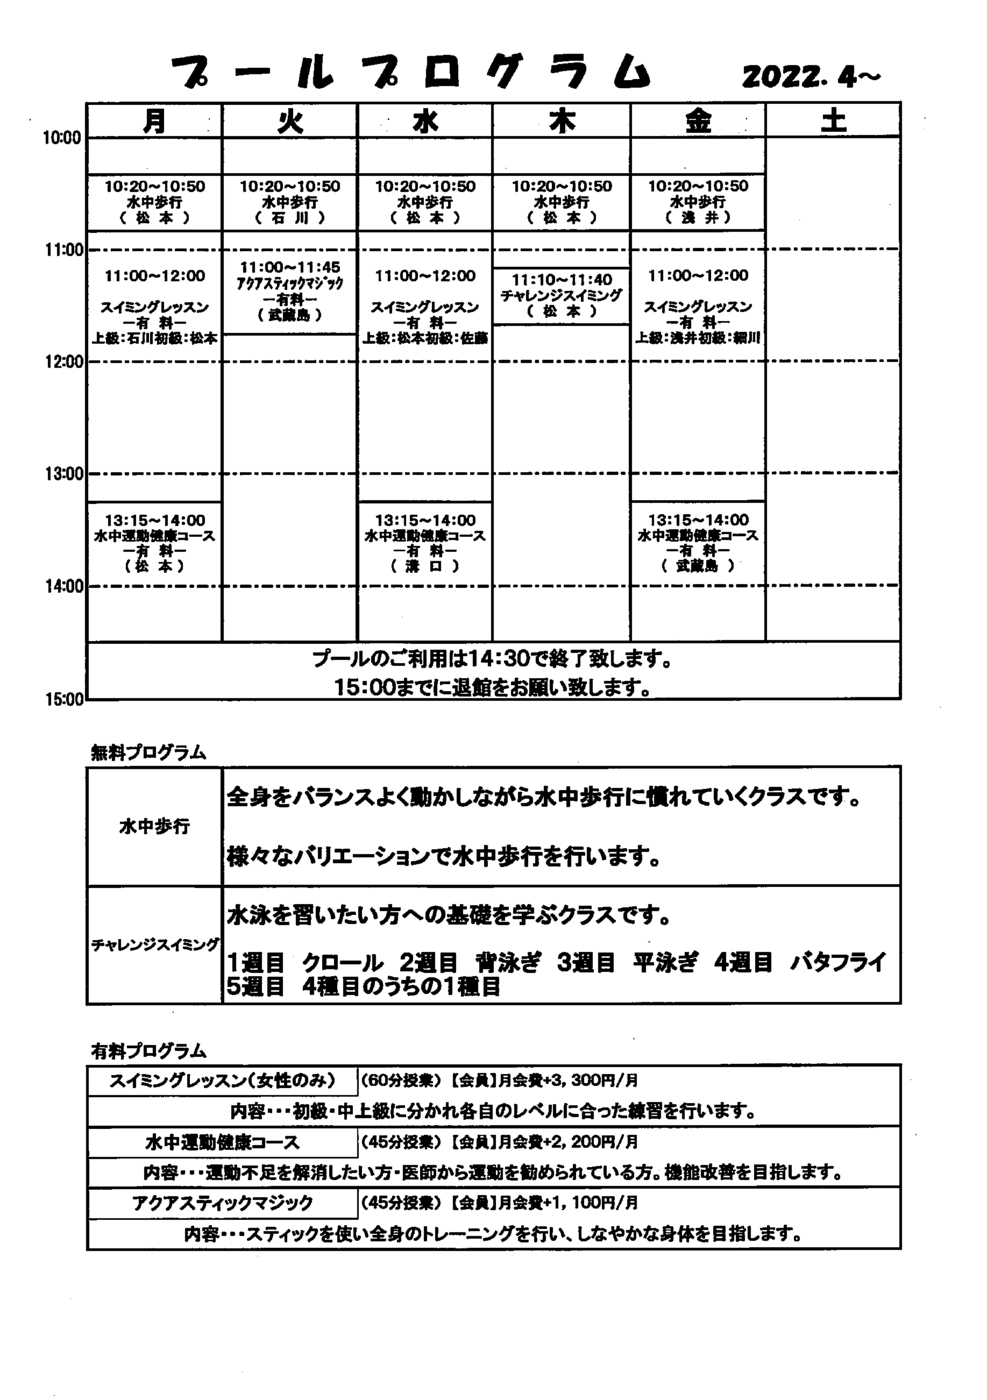 2022年4月ホイッスル磐田プールプログラム表